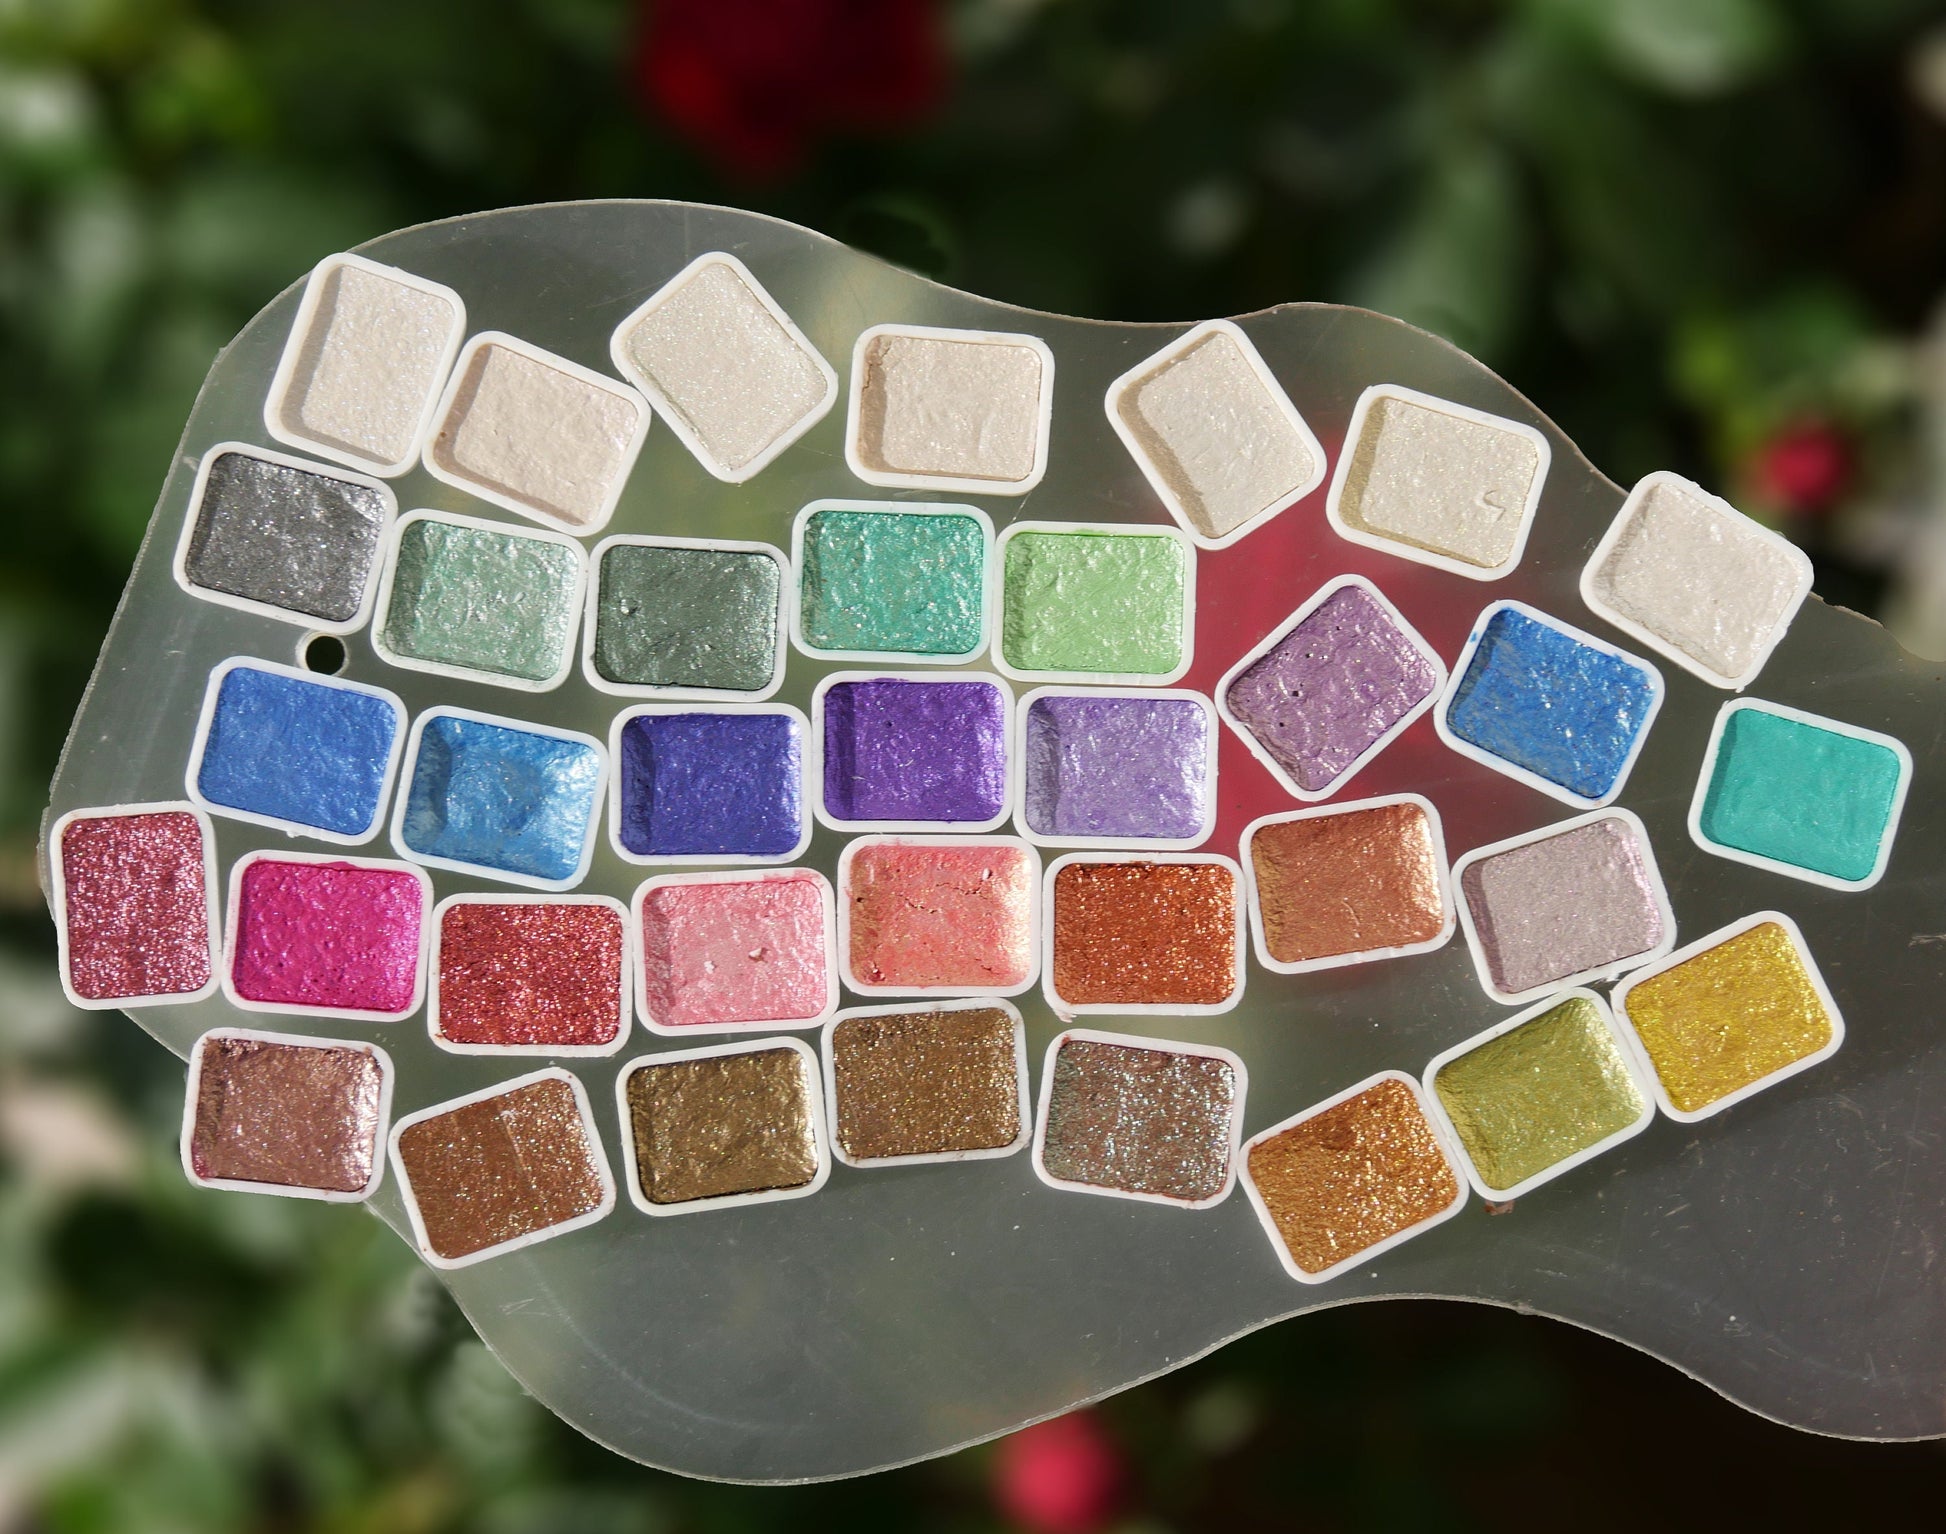 24 Colors Pearl Glitter Watercolor Paint Set Portable Pigment Metallic  Paint Set